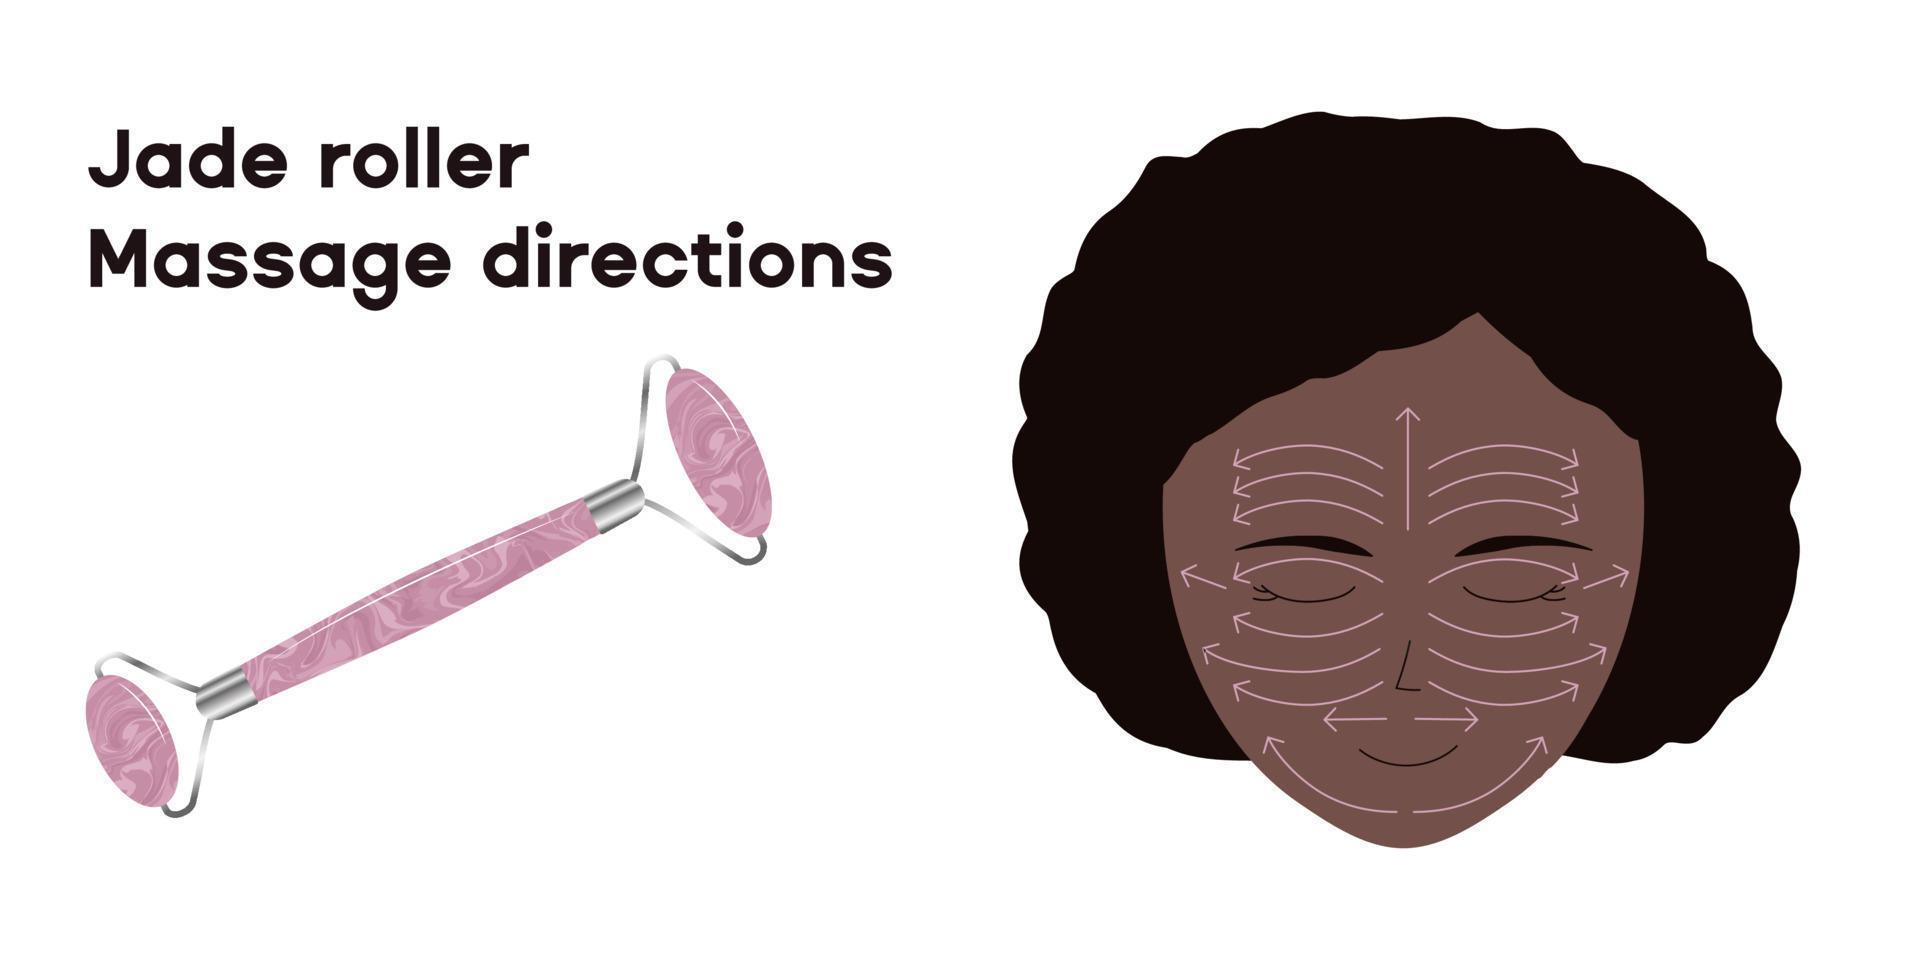 Instruções de massagem do rolo de jade de quartzo rosa em um rosto de uma jovem negra. vetor